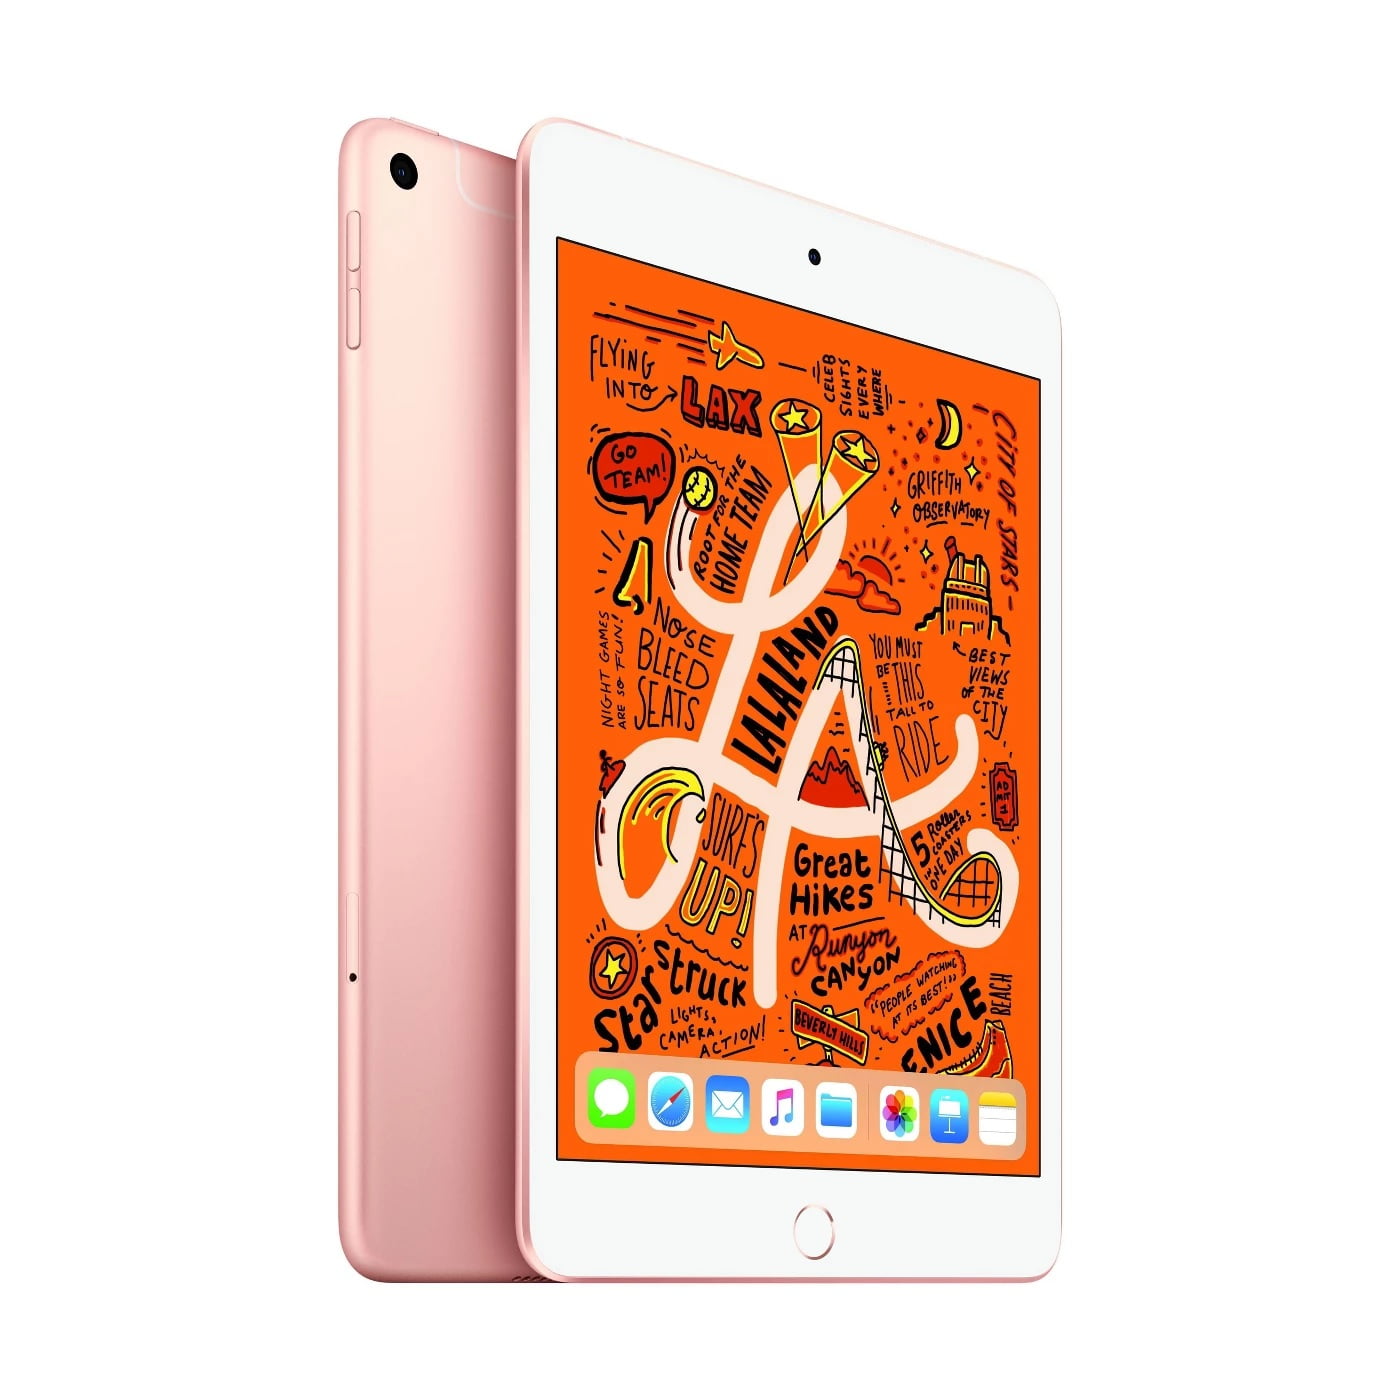 Refurbished Apple iPad Mini 5 64GB Gold Wi-Fi MUQY2LL/A - Walmart.com